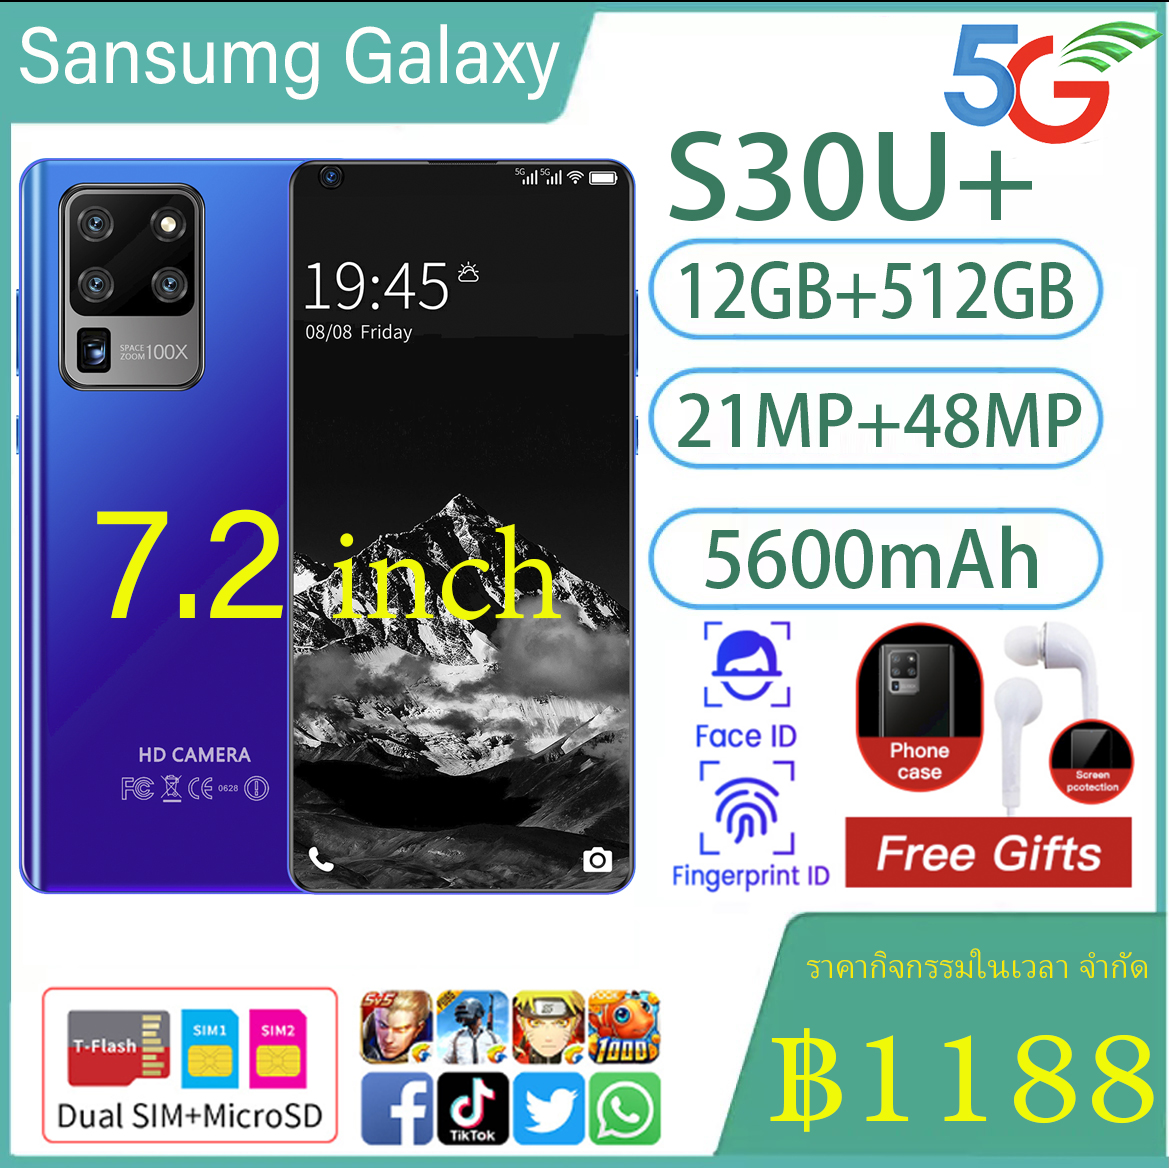 มือถือราคาถูก Sansumg Galaxy S30u + มือถือสมาร์ทโฟนจอใหญ่ 7.2 นิ้ว RAM12G Rom512GB หน่วยความจำใหญ่รองรับ 5G จริง Android 10 สแกนลายนิ้วมือปลดล็อคใบหน้าสเปคจริง / ราคาถูกมือถือของแท้ส่งฟรีทั่วไทย